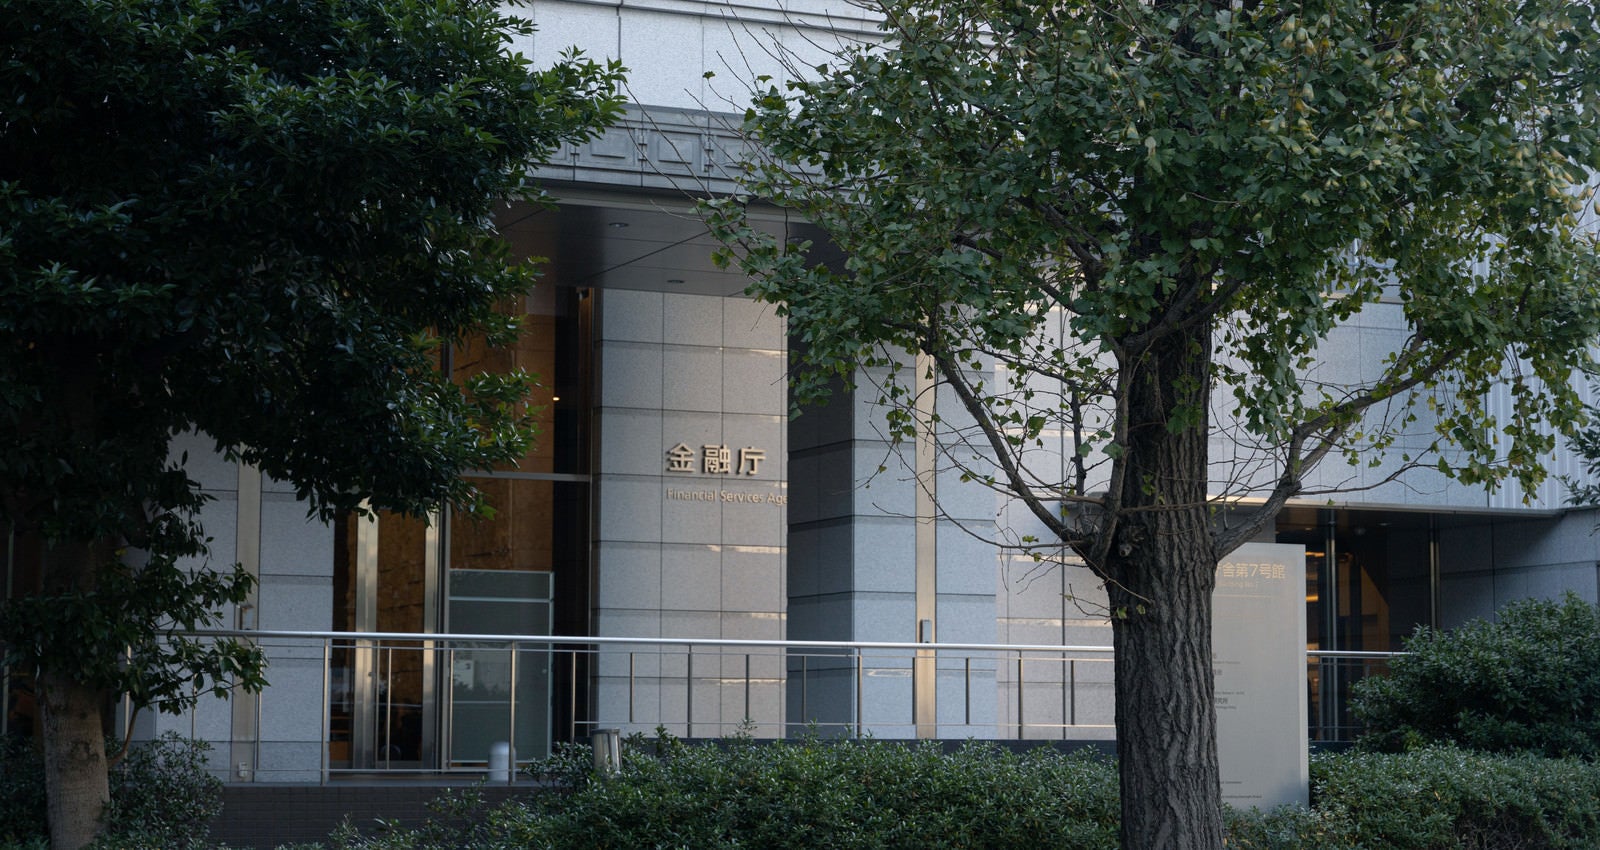 「街路樹と金融庁ビル入口」の写真